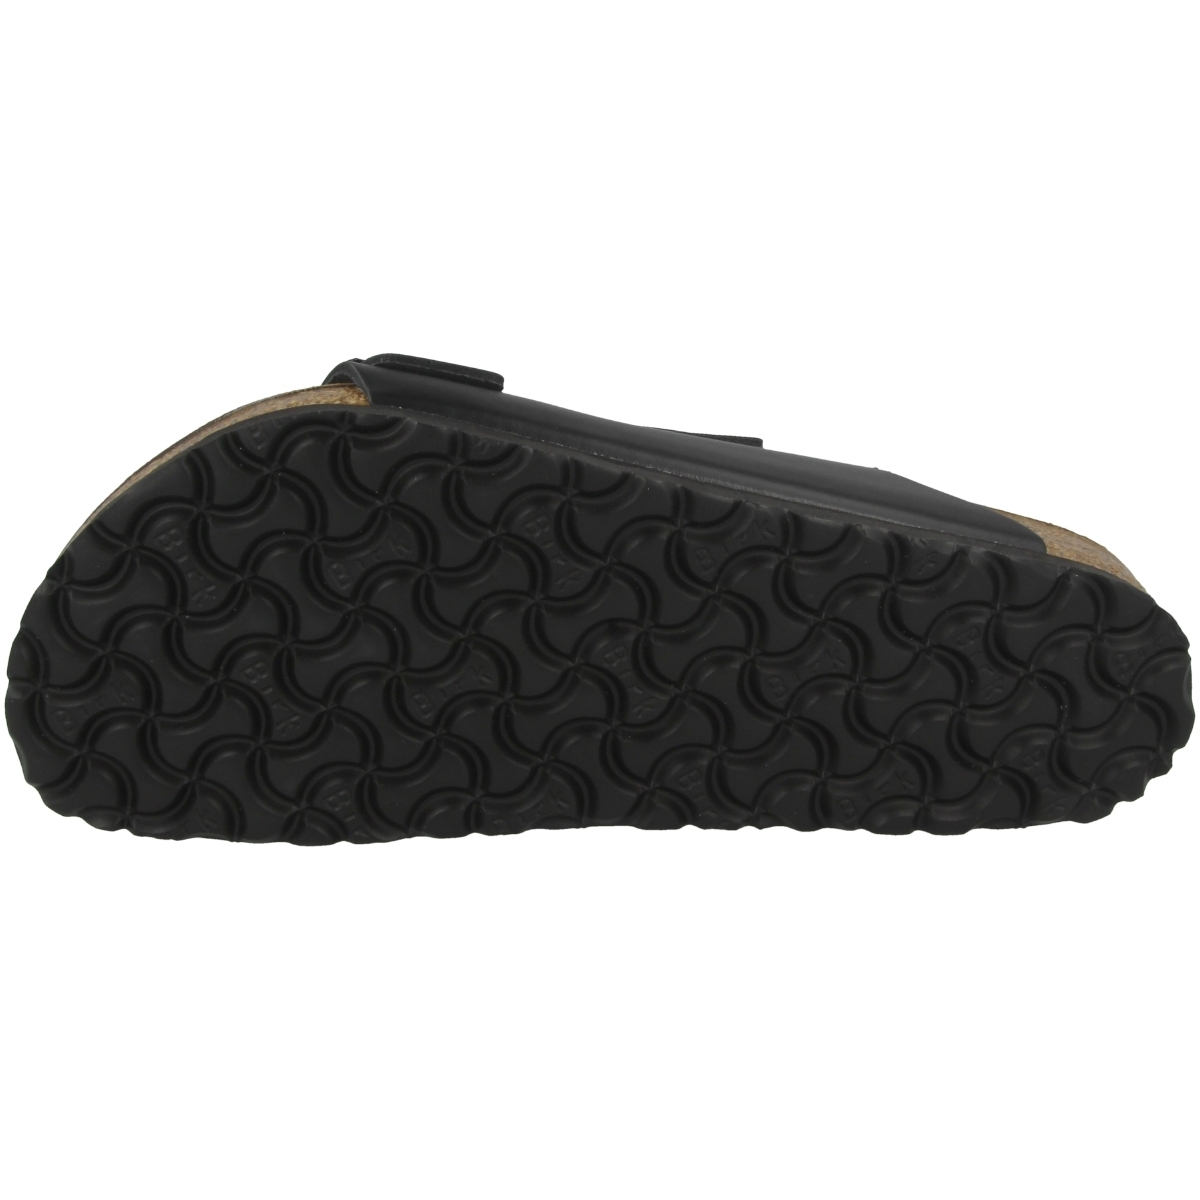 Birkenstock Arizona Glattleder Sandale normal schwarz